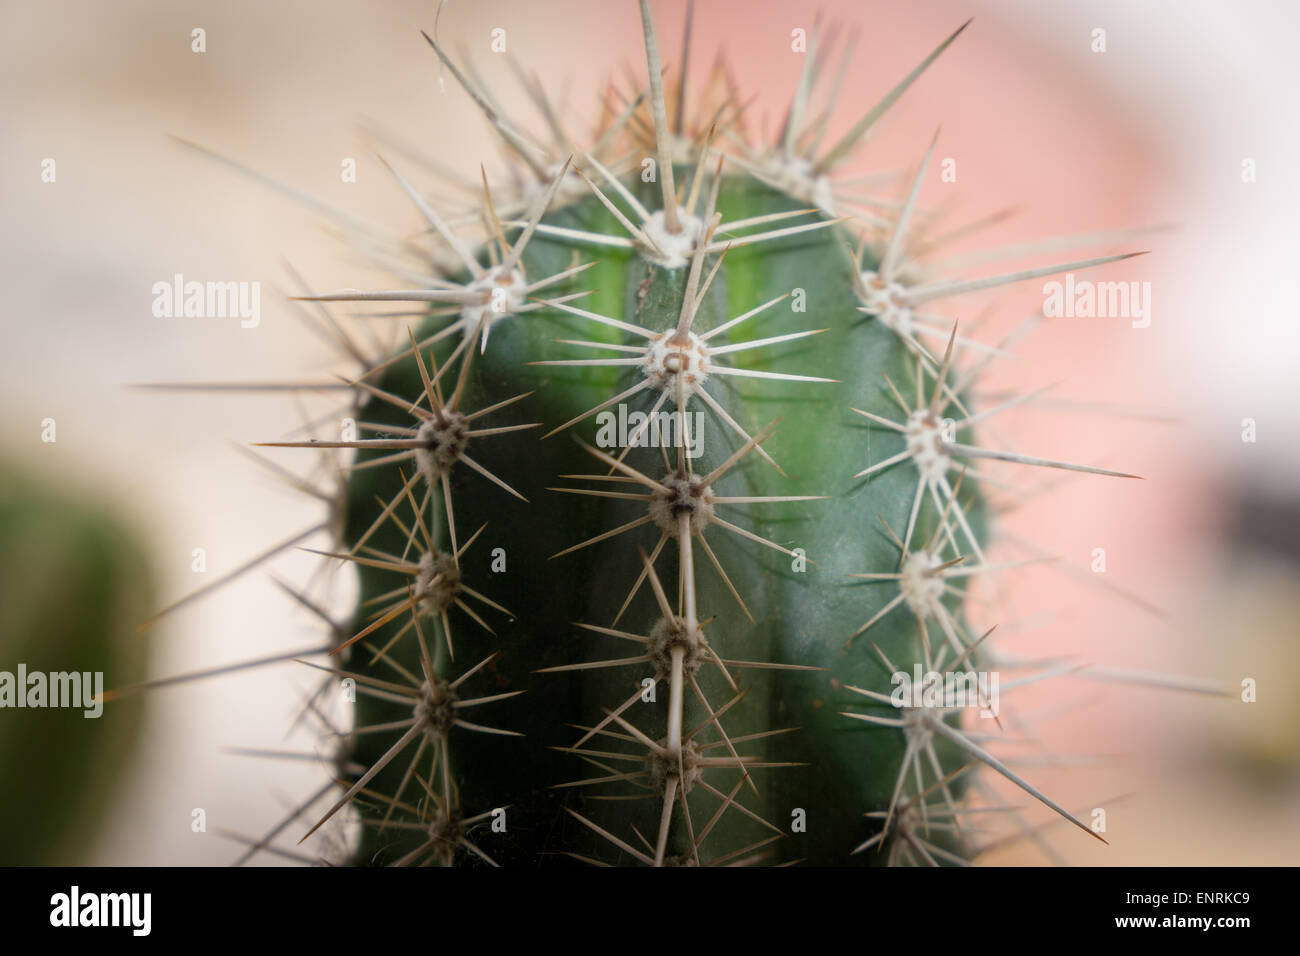 a-close-up-of-a-spiky-cactus-ENRKC9.jpg